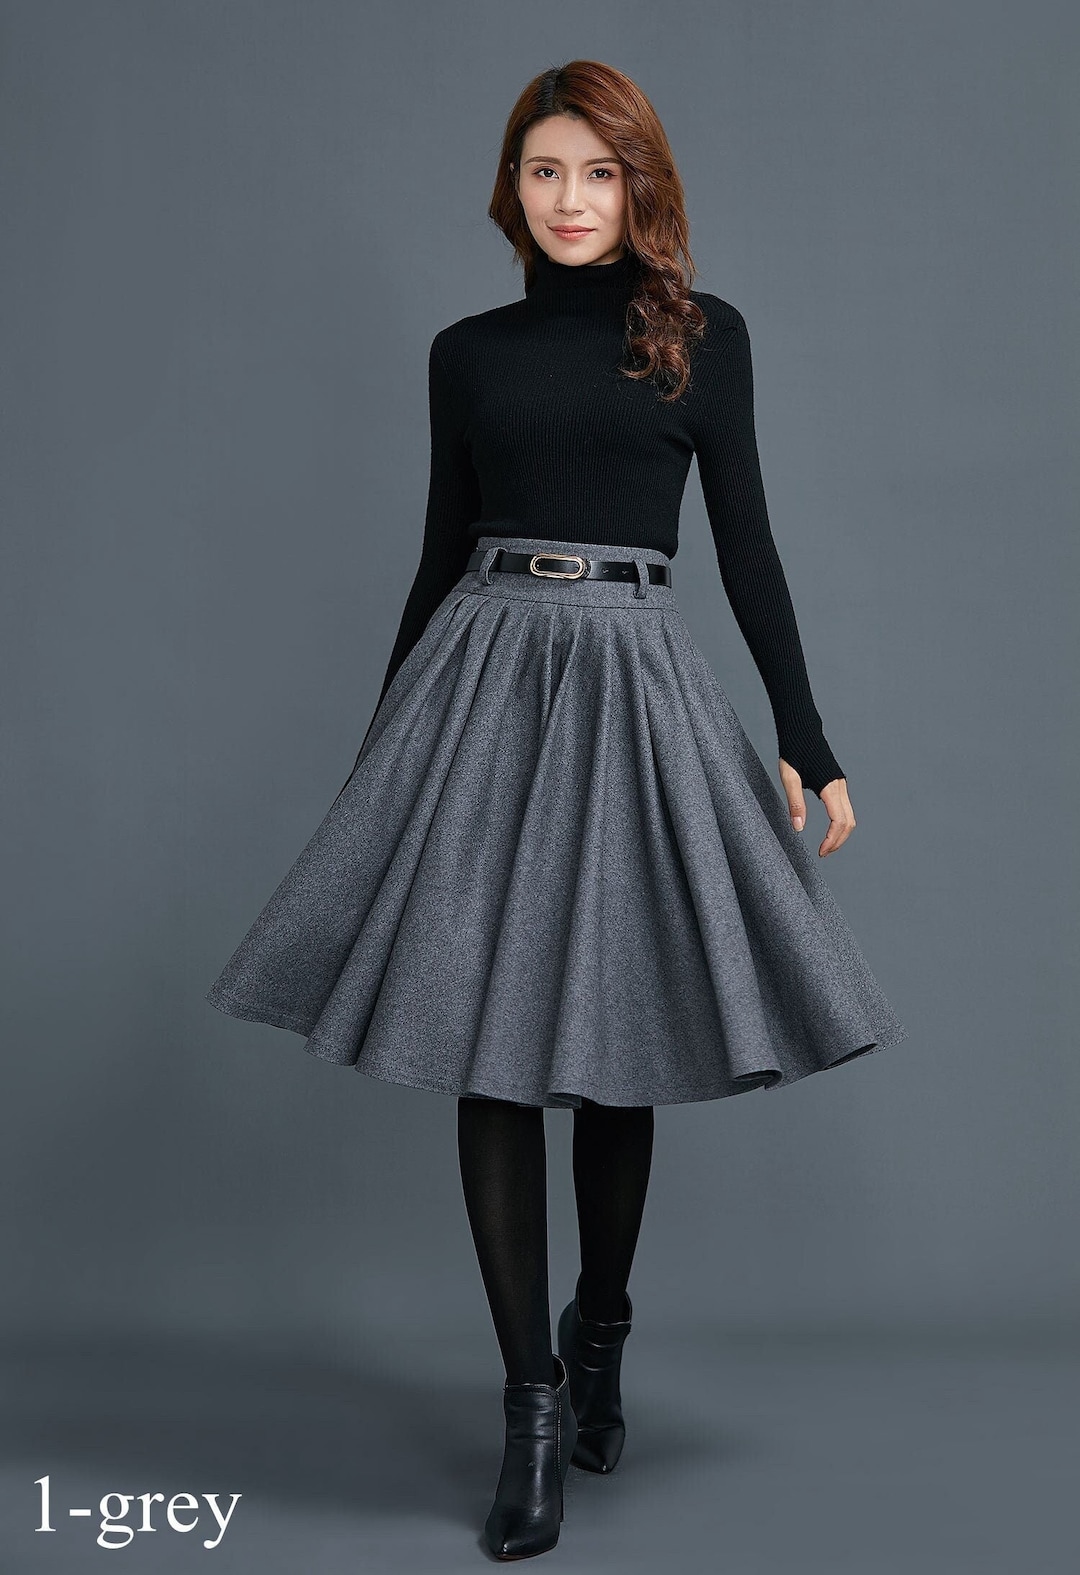 Knee Length Circle Wool Skirt for Women Pleated Winter Skirt Skater ...